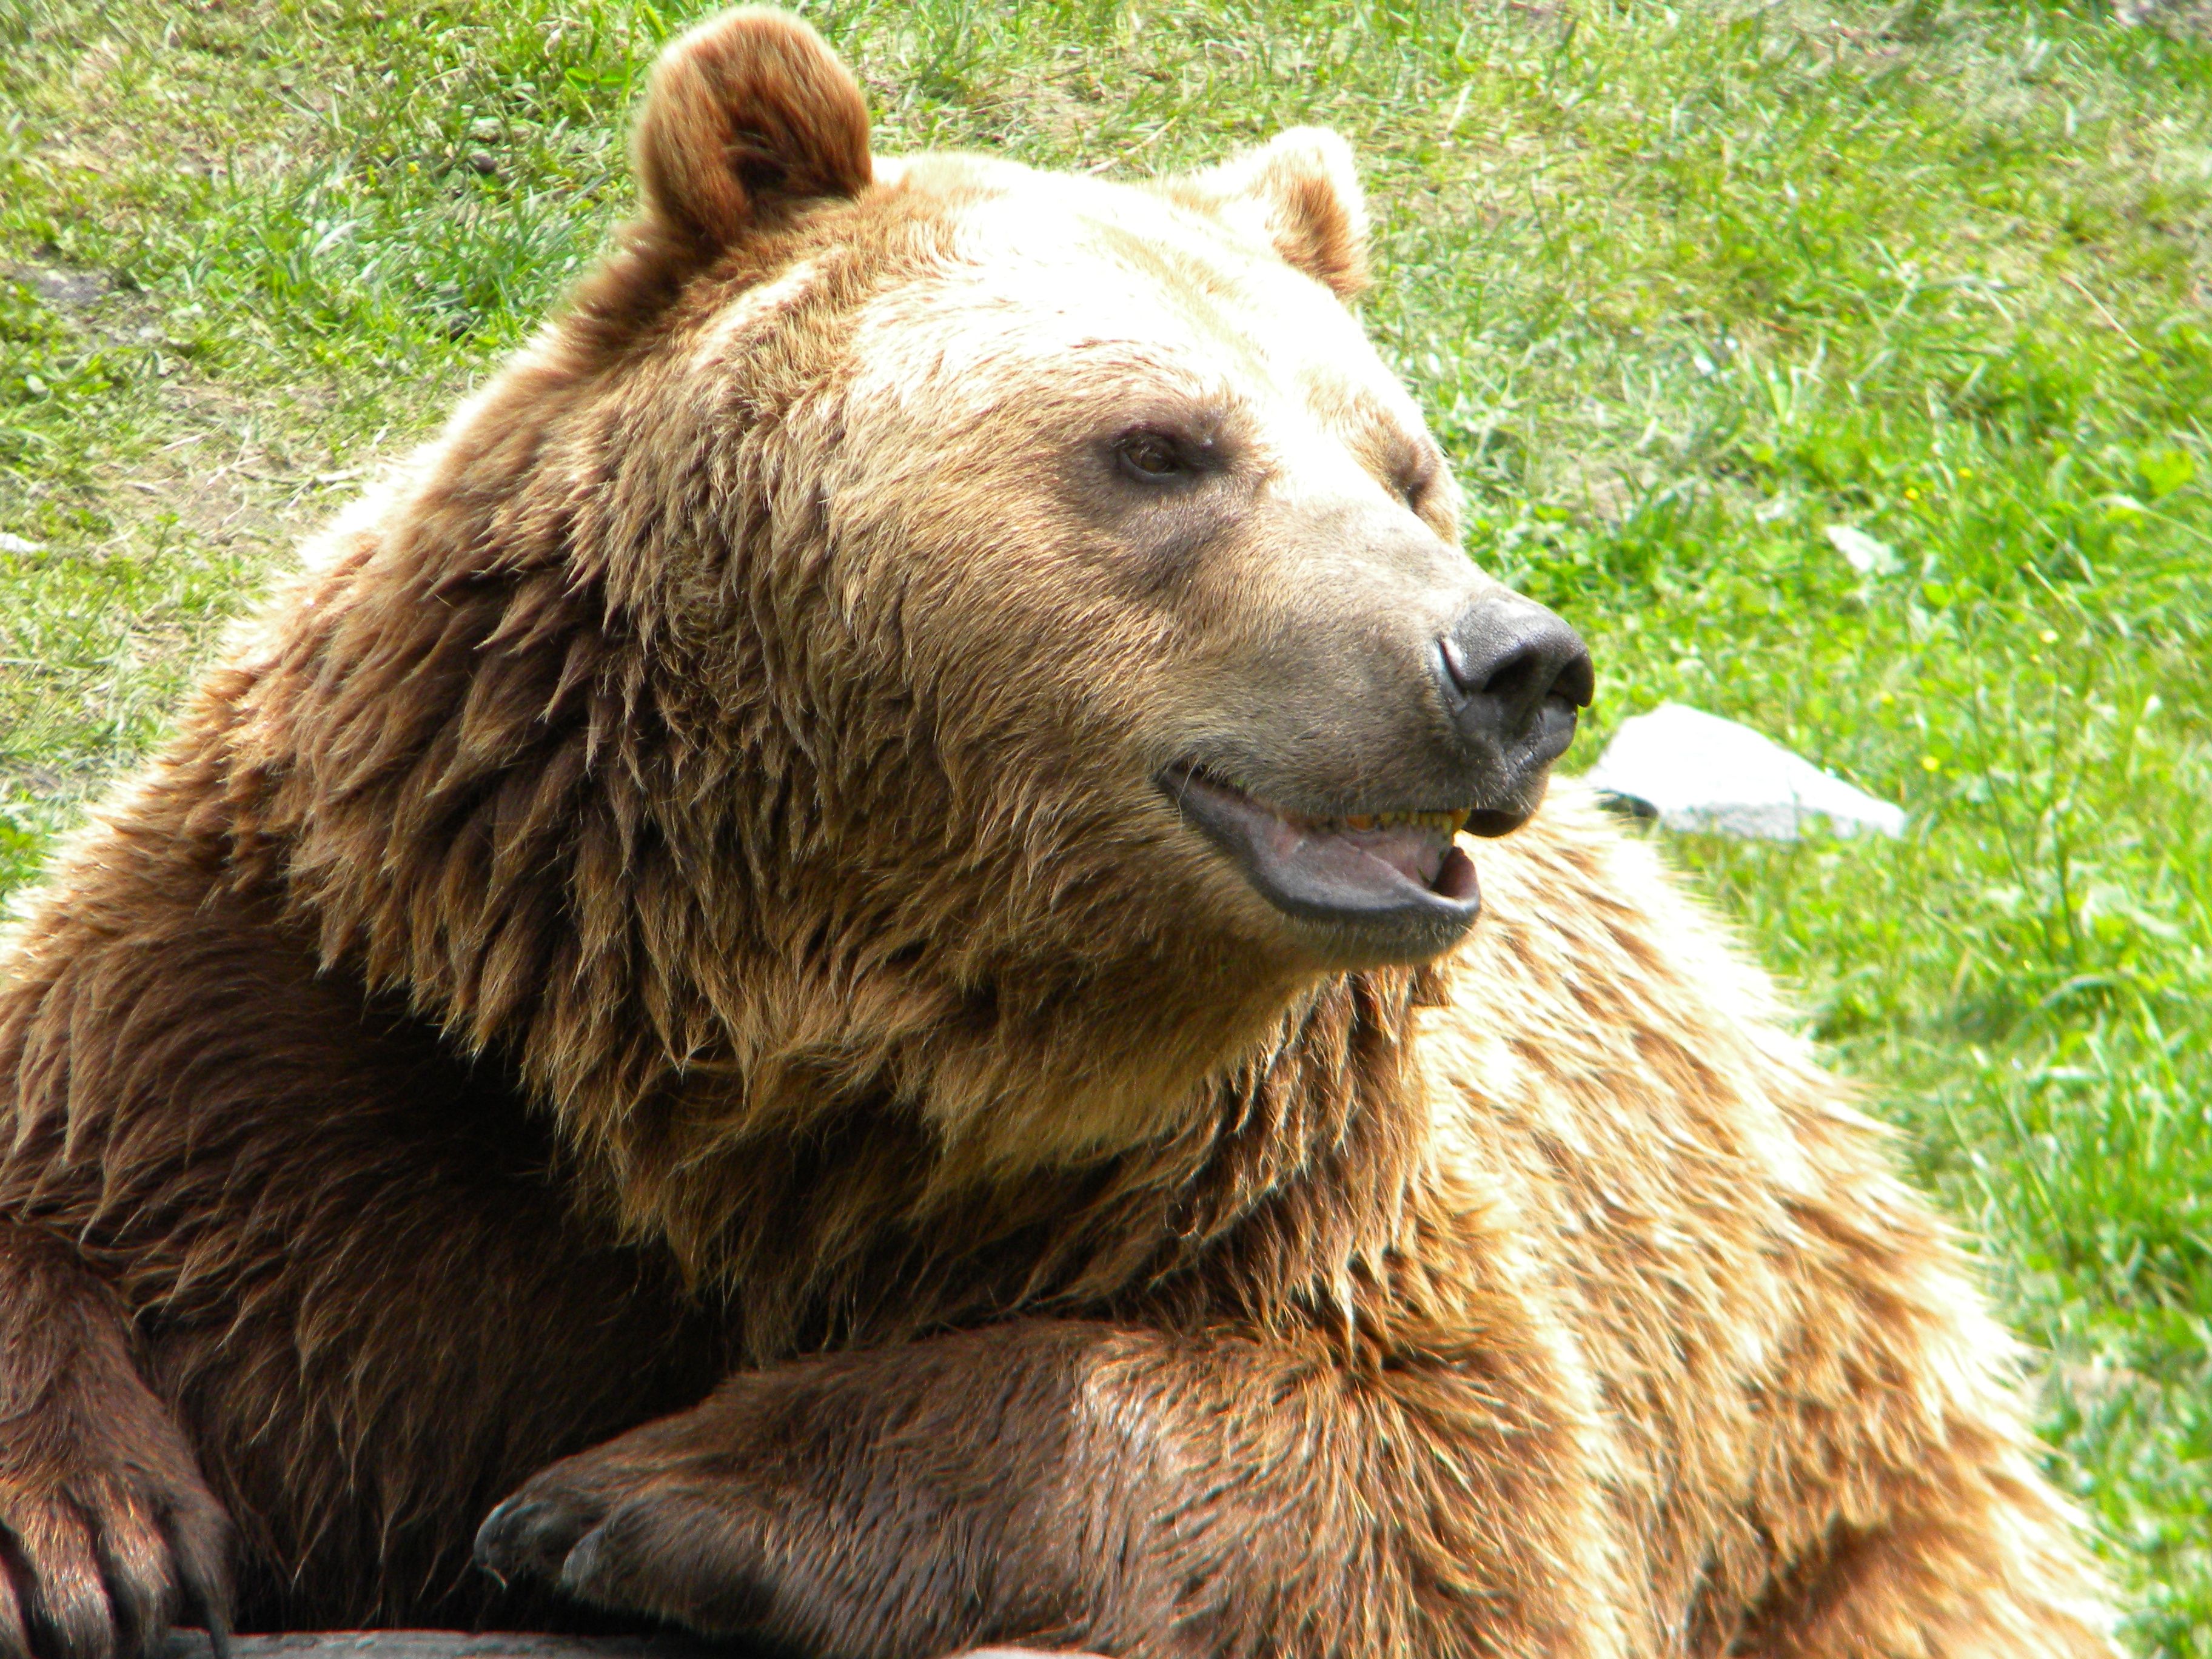 Mail.ru: Der russische Bär erwacht | OnlineMarketing.de